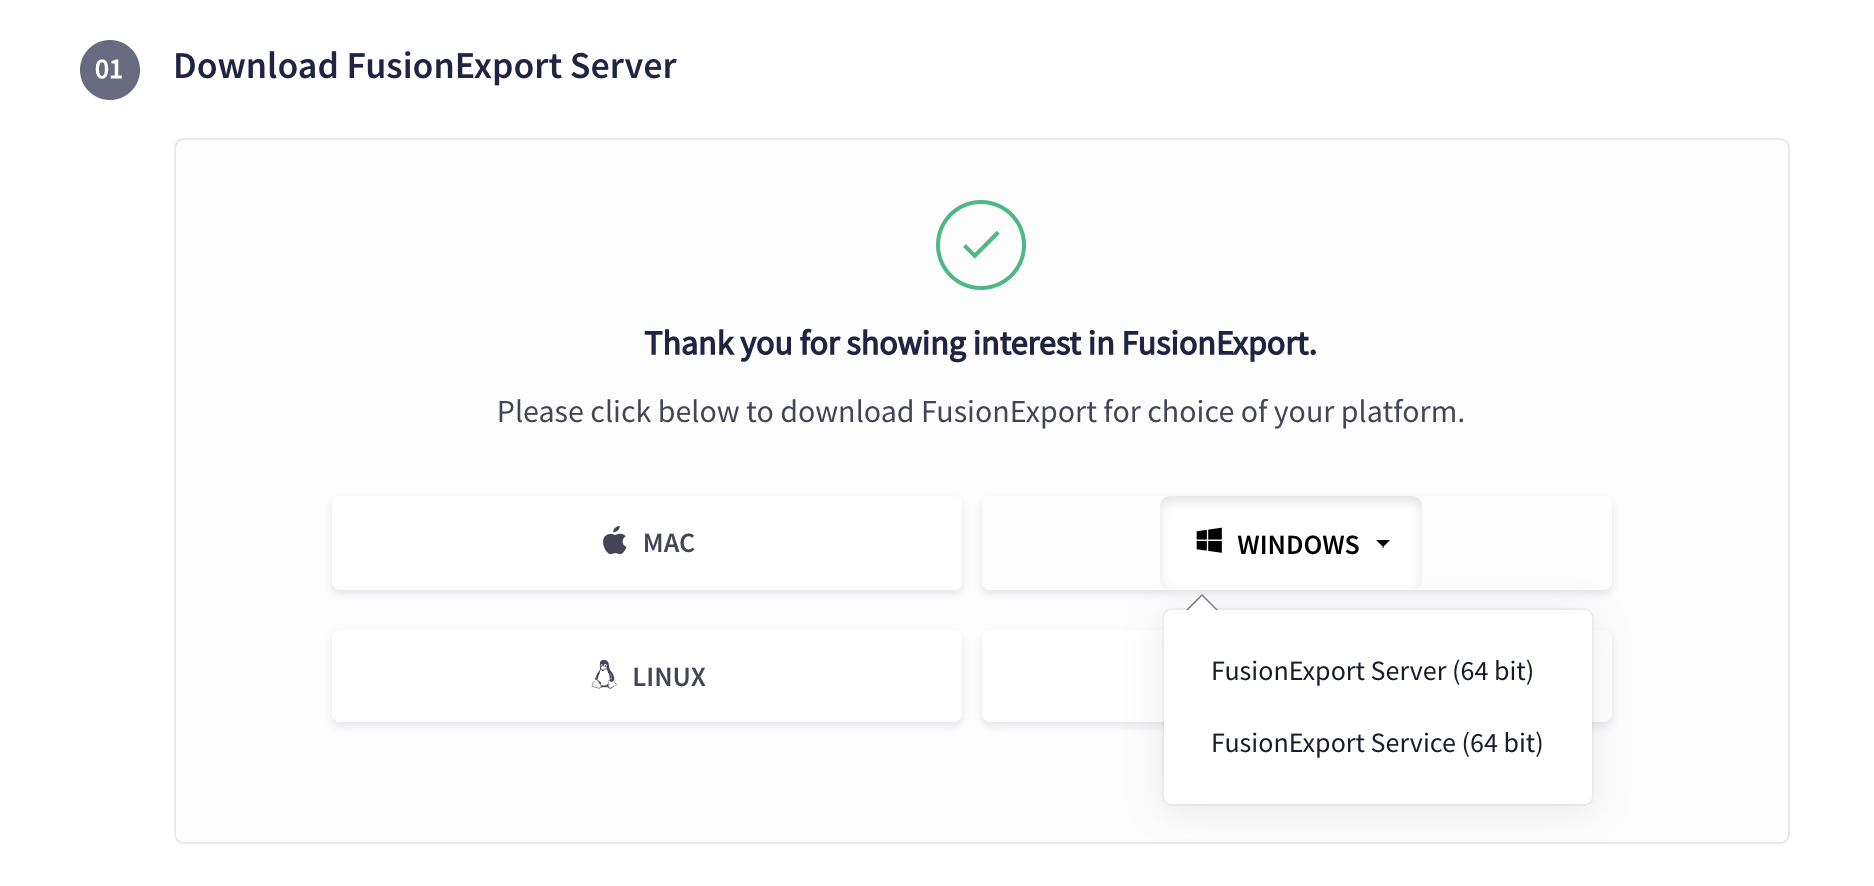 Download FusionExport Server